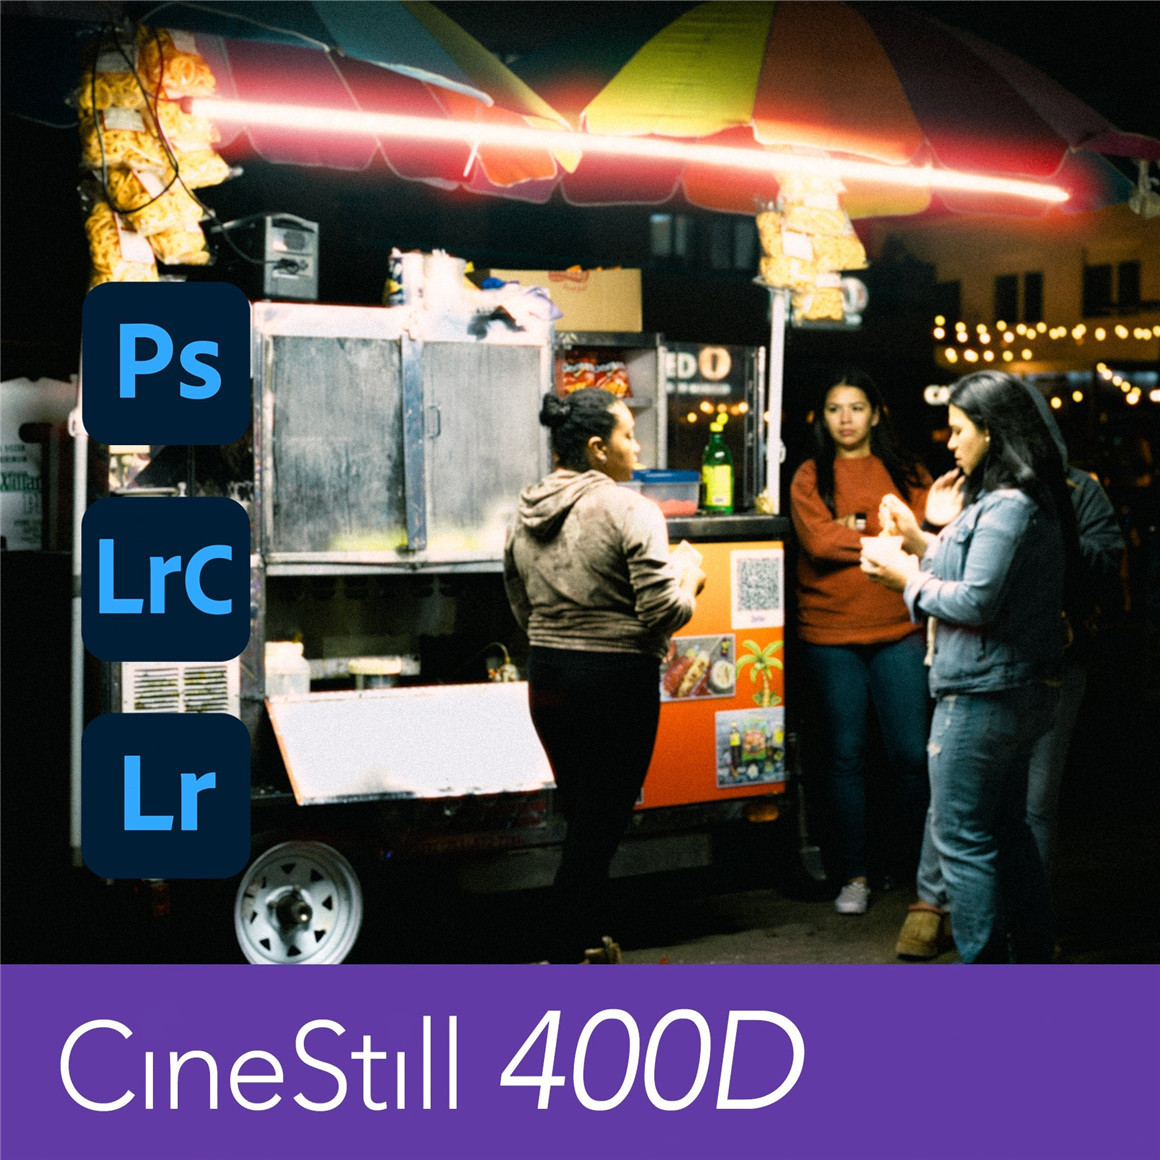 复古柯达CineStill 400D胶片电影仿真模拟LR预设 CineStill 400D Film Emulation Lightroom Preset（9130）图层云